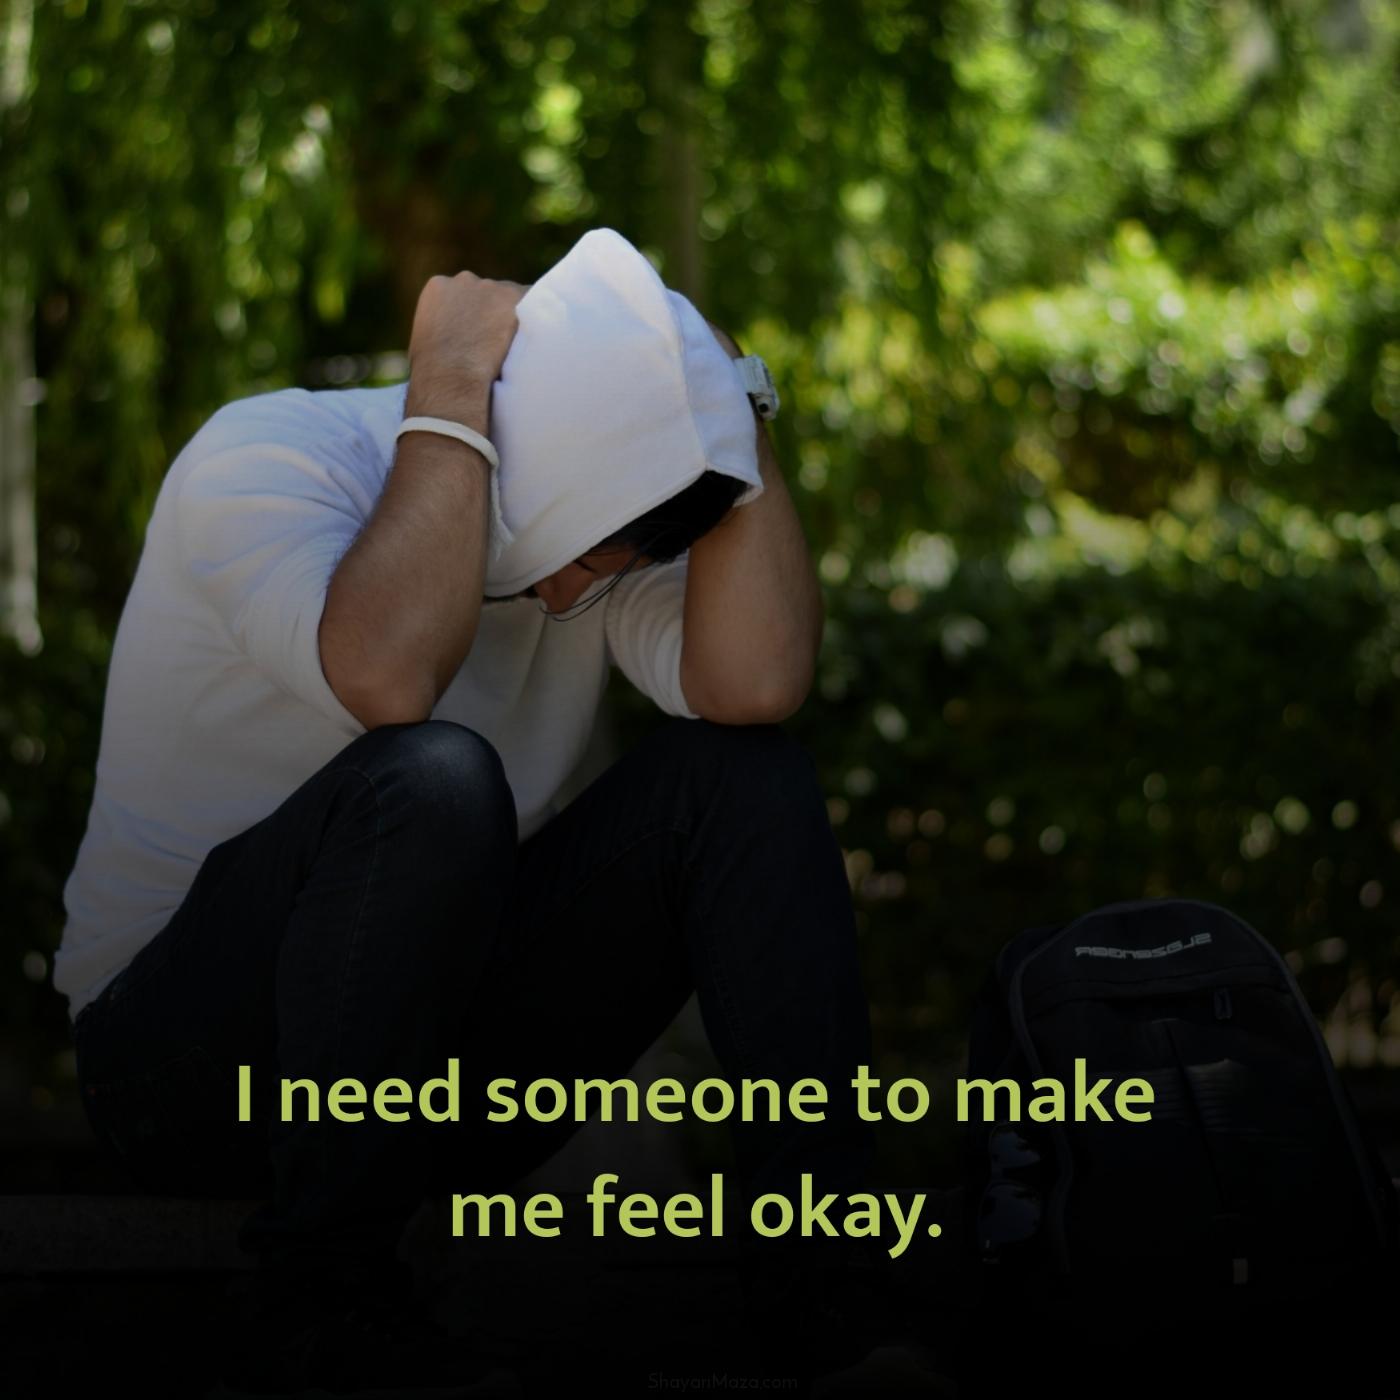 I need someone to make me feel okay